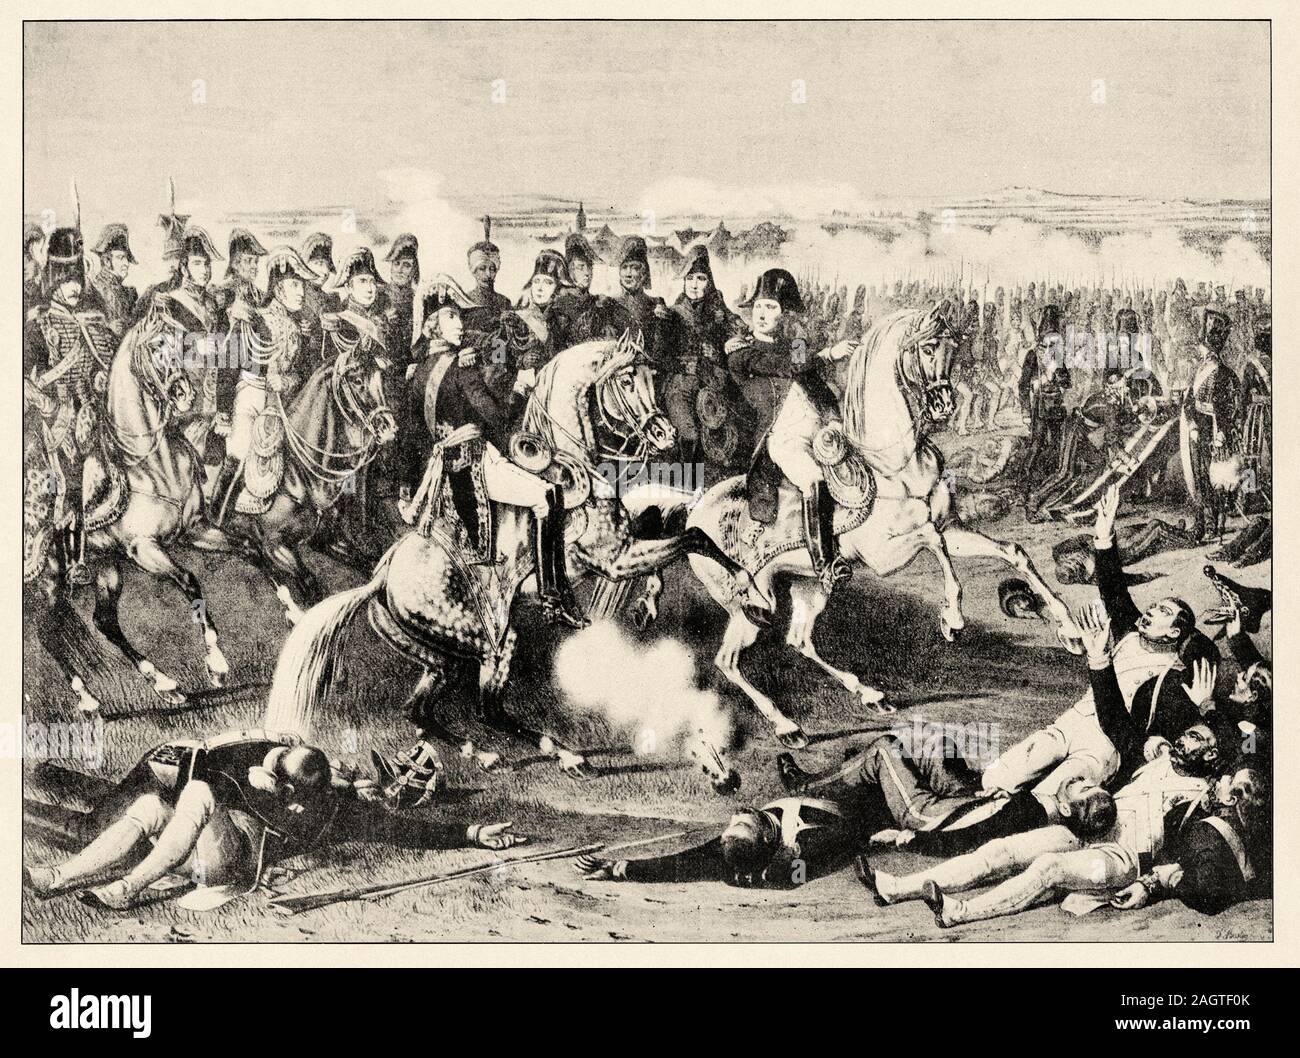 La bataille d'Austerlitz ou les trois empereurs, confronté le 2 décembre 1805, une armée française commandée par l'Empereur Napoléon I contre la Russ Banque D'Images